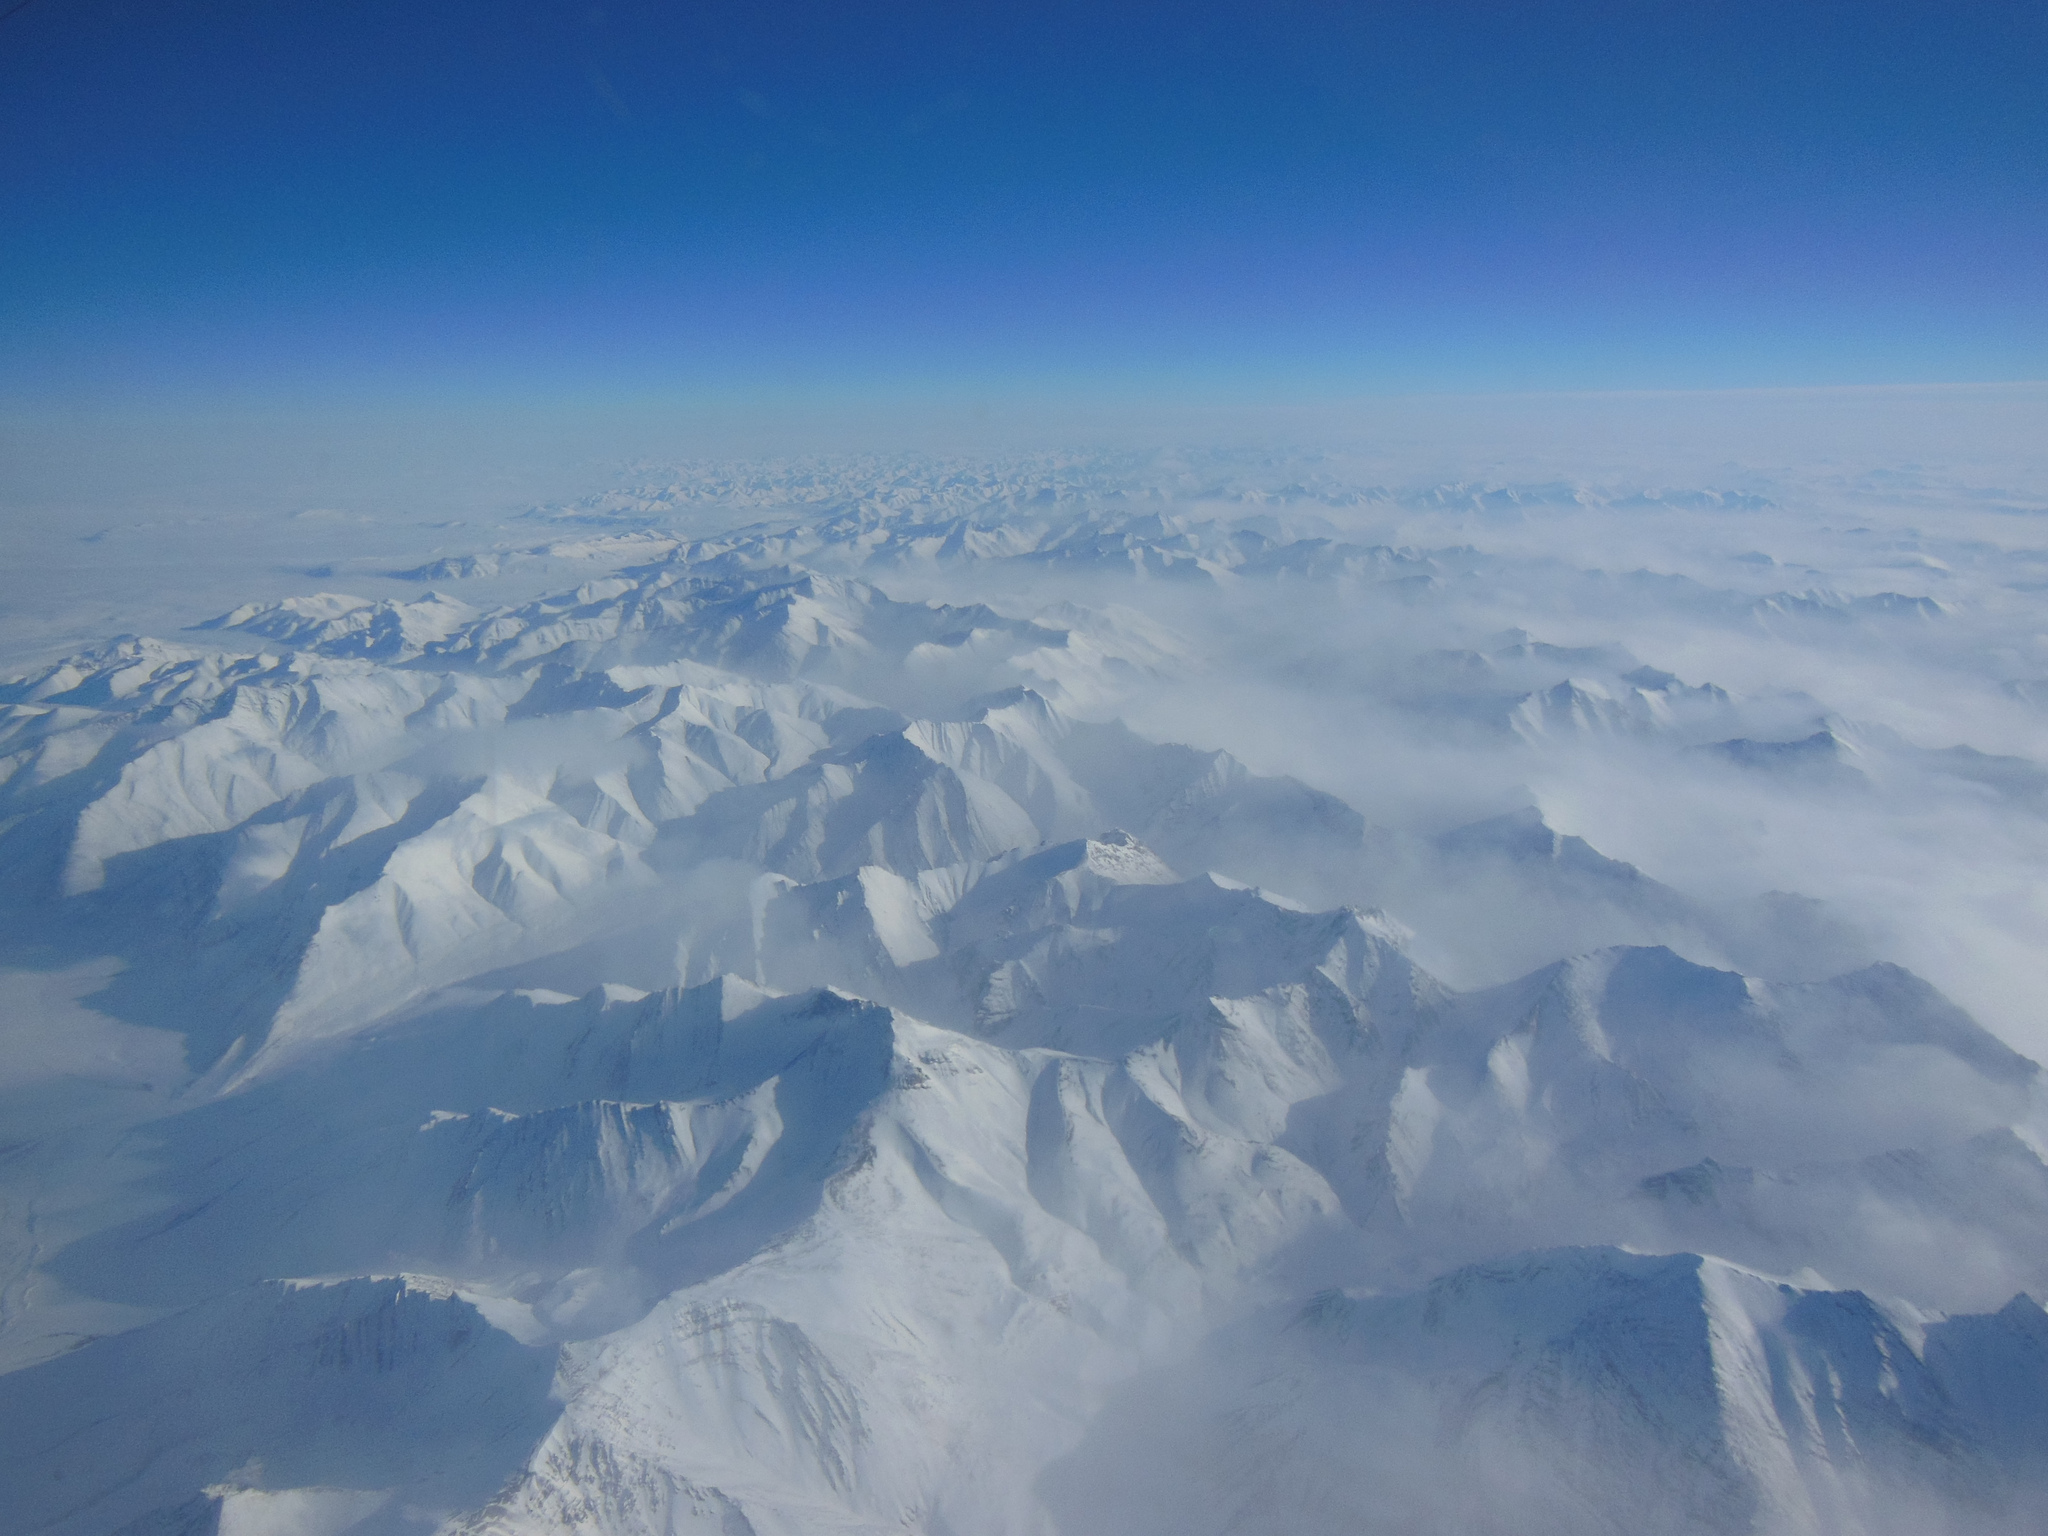 Alaskan Mountains Seen During IceBridge Transit | NASA